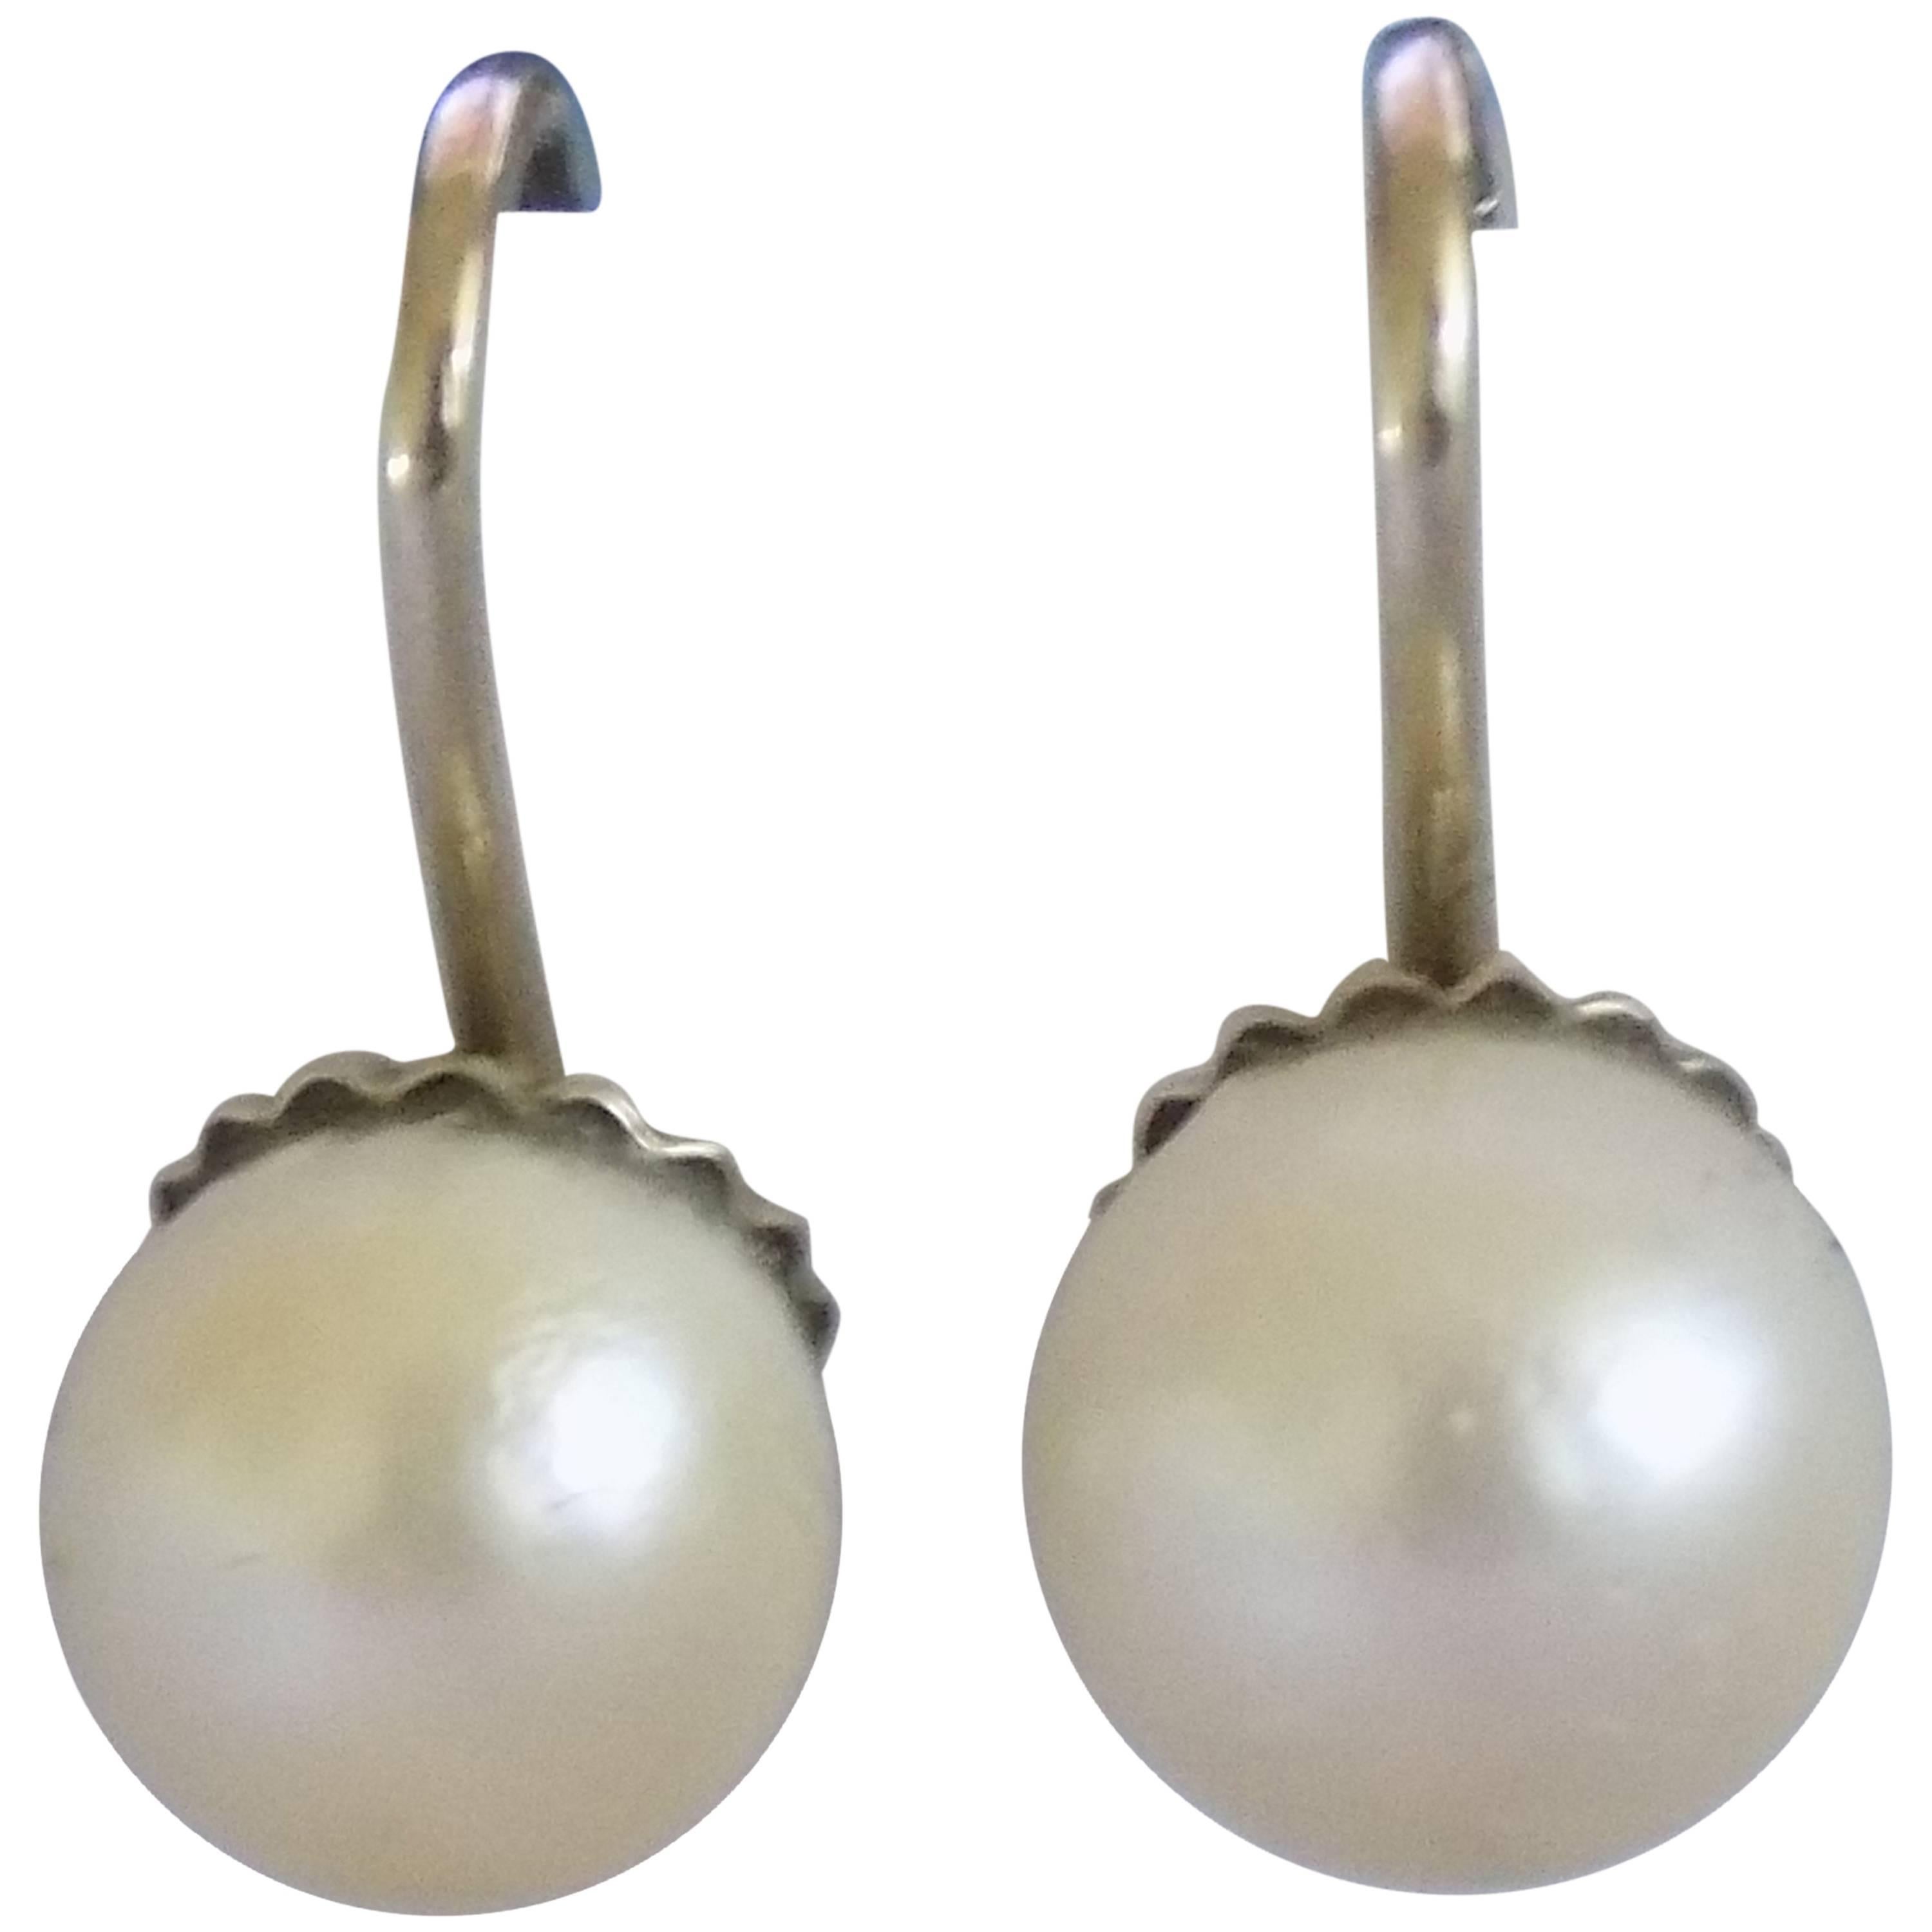 18kt Gold Pearl Earrings